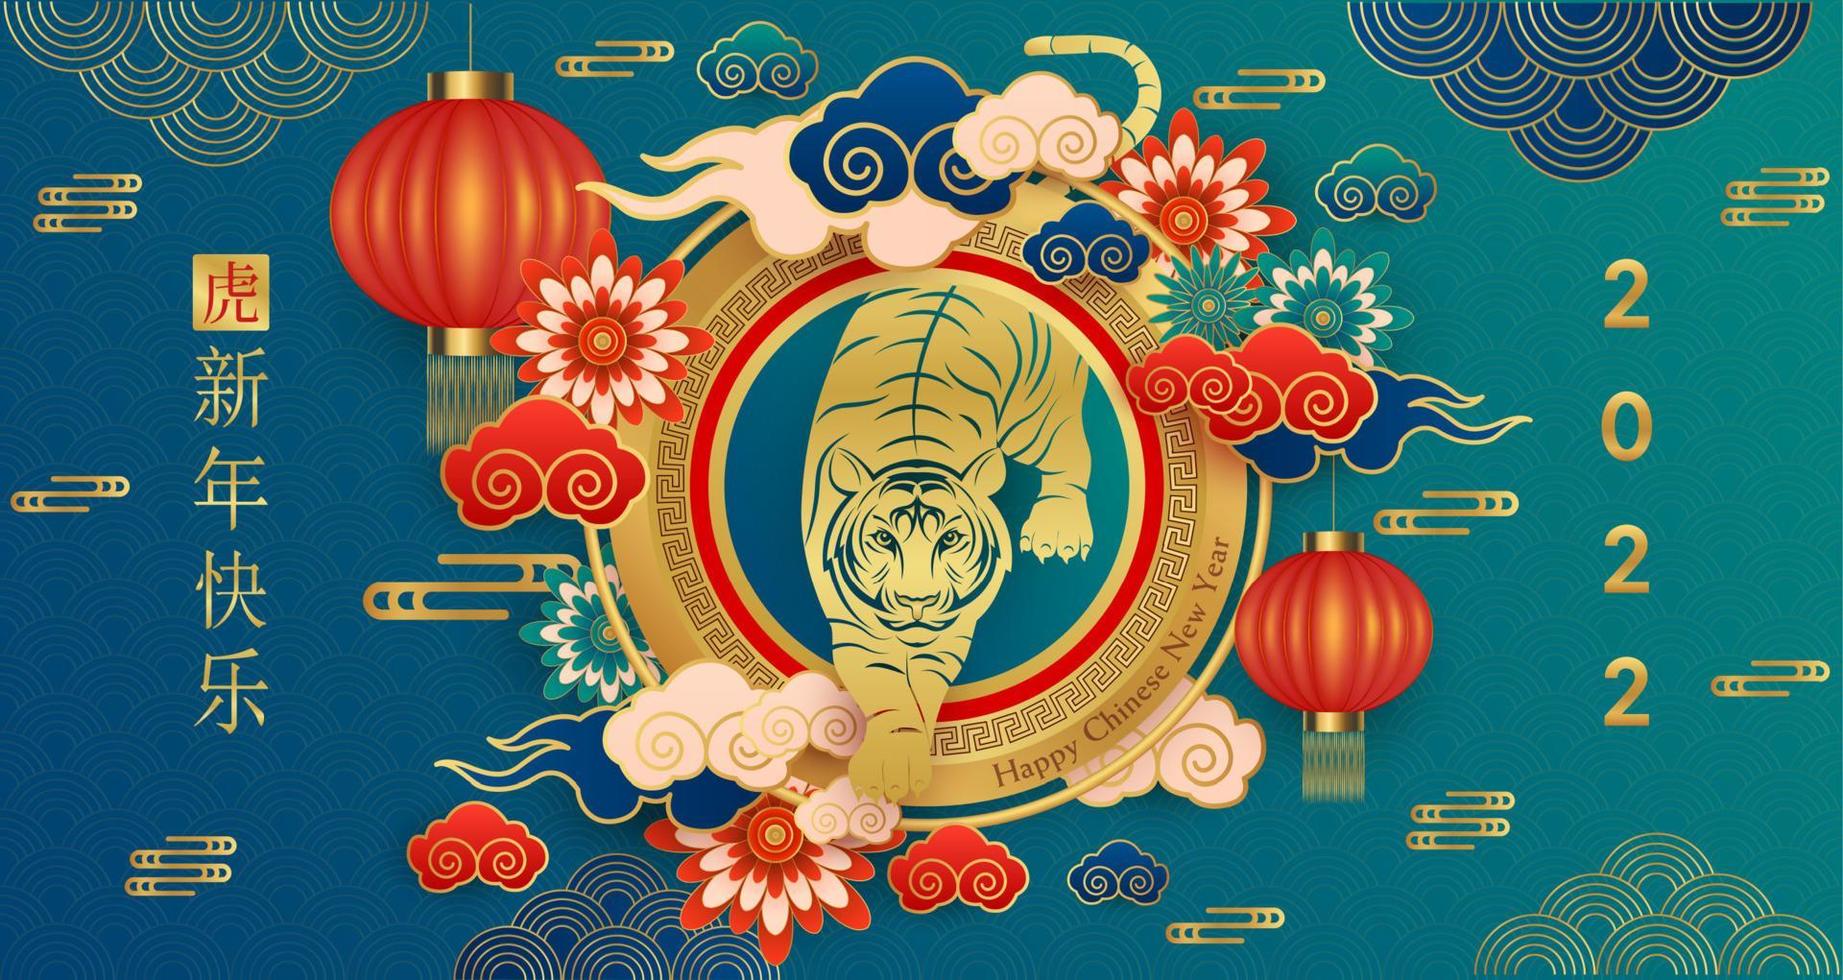 felice anno nuovo cinese 2022, segno zodiacale tigre su sfondo di colore blu. elementi asiatici con stile di taglio della carta tigre artigianale. traduzione cinese felice anno nuovo 2022, anno della tigre vettoriale eps10.